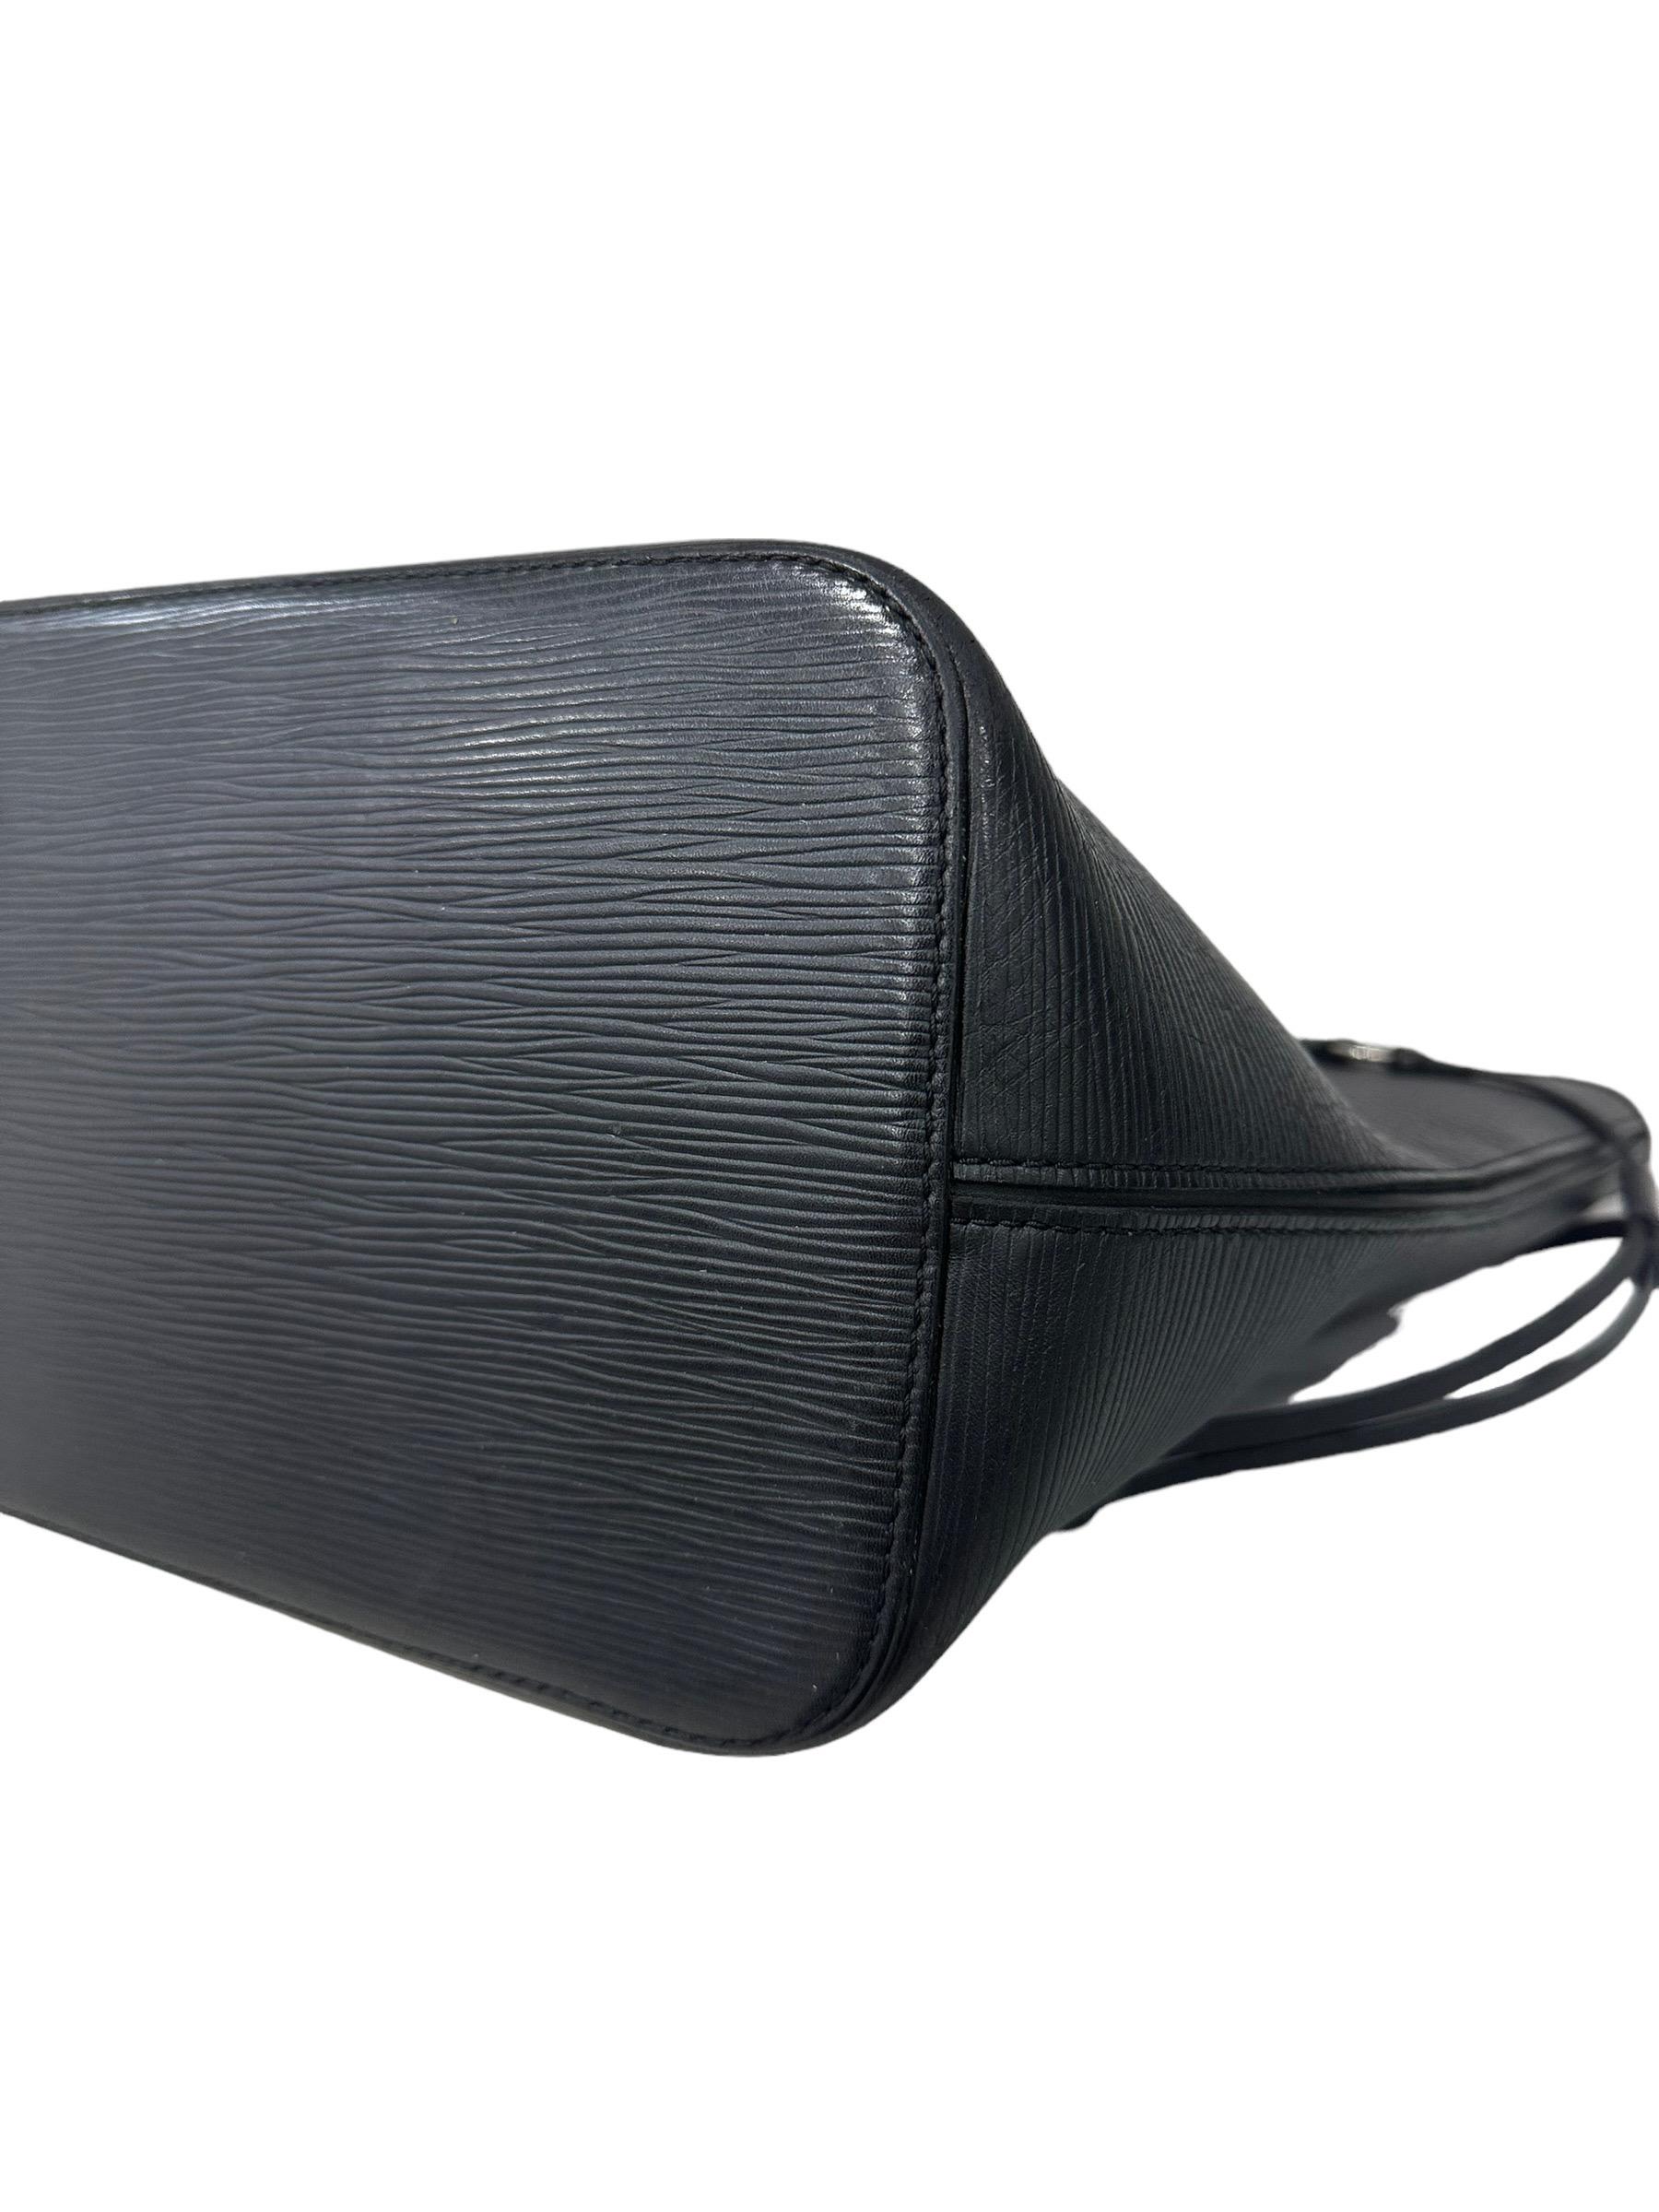 Louis Vuitton Neverfull MM Black Epi Leather Shoulder Bag 4